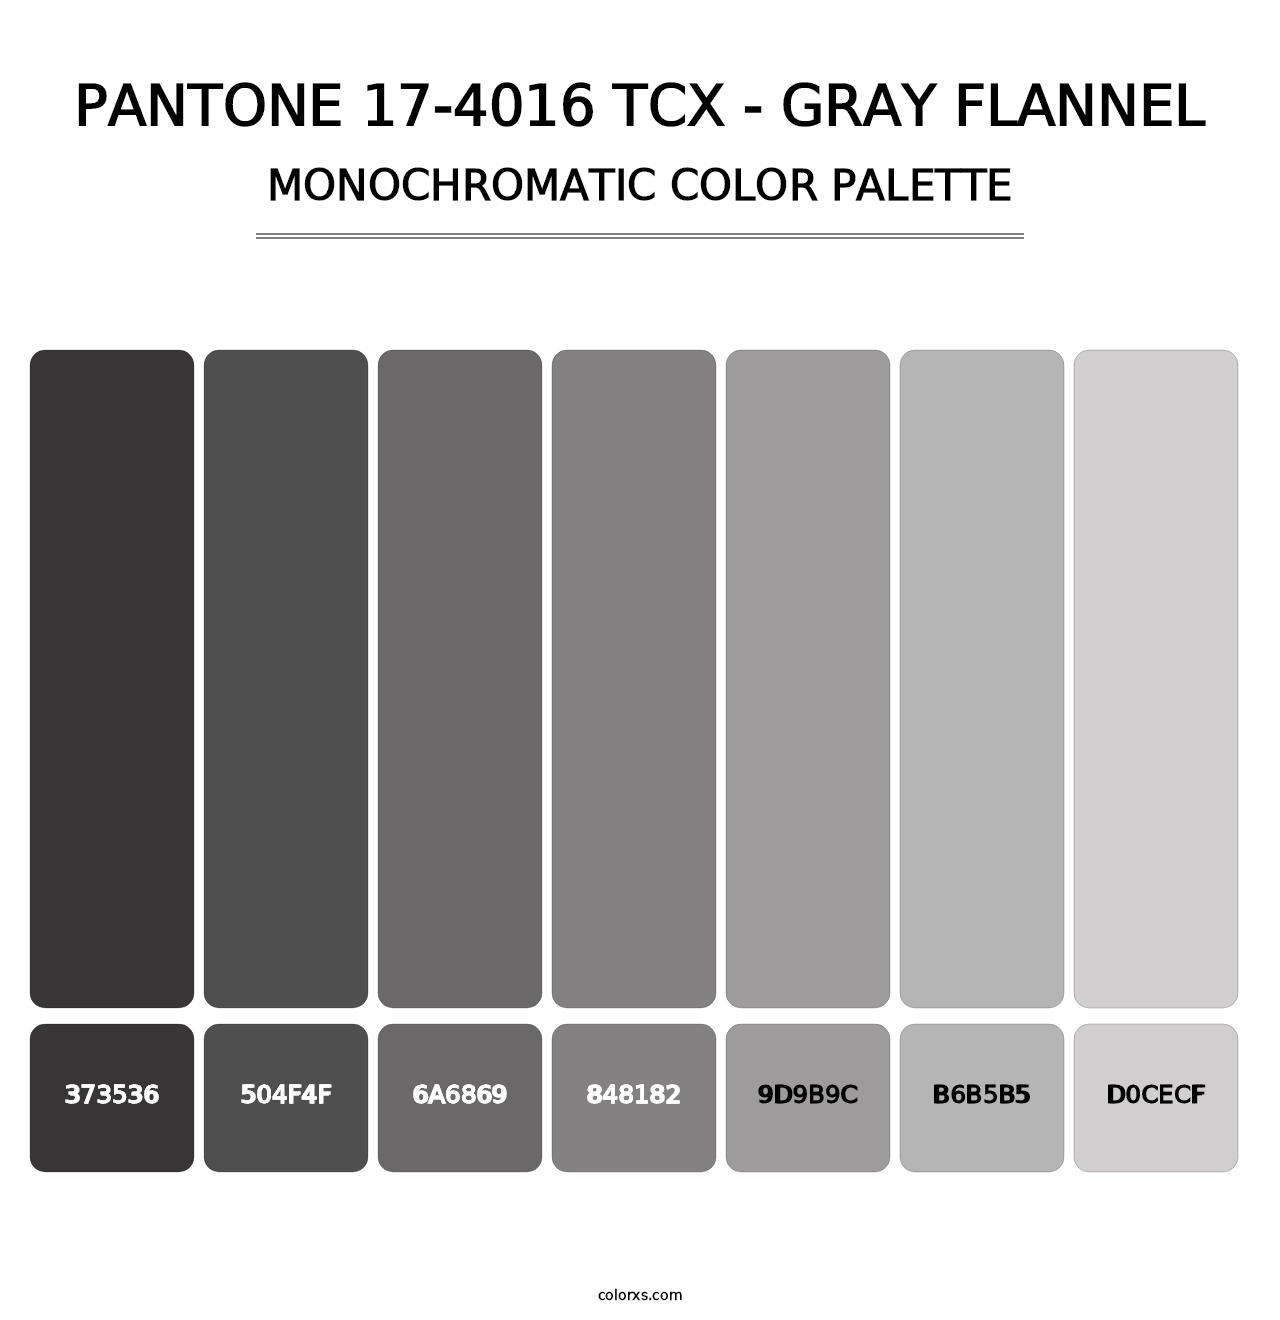 PANTONE 17-4016 TCX - Gray Flannel - Monochromatic Color Palette